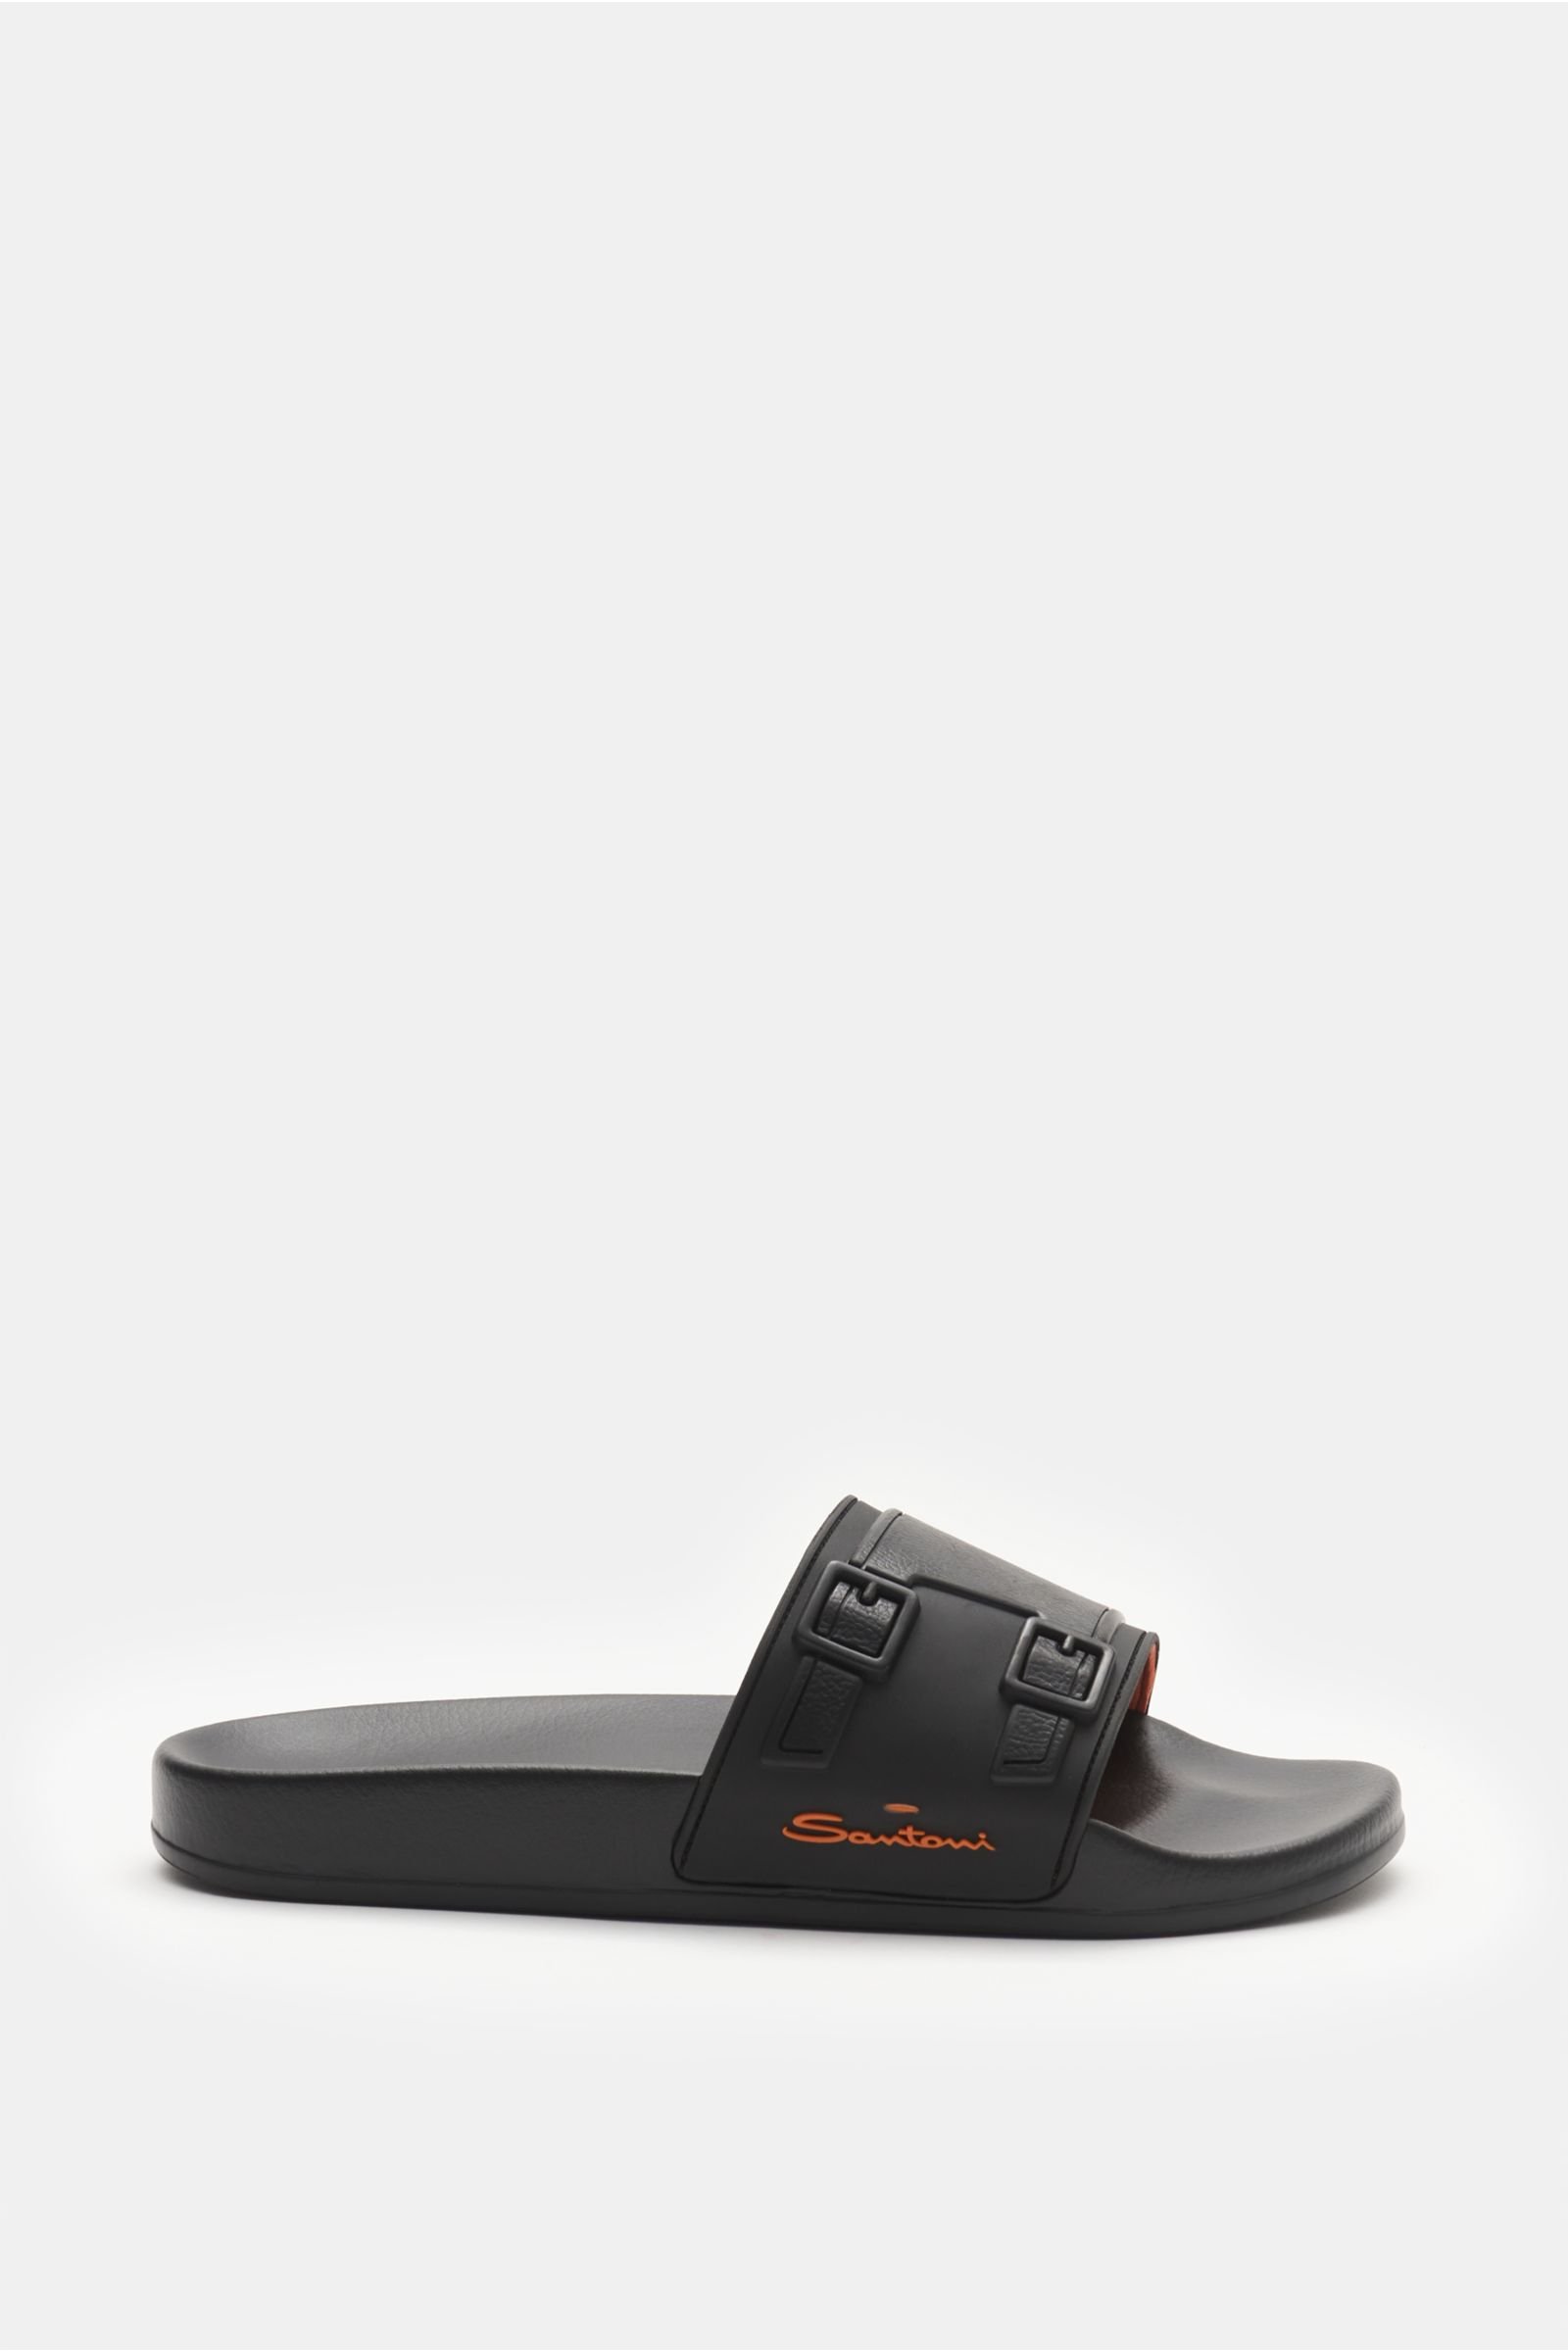 Slip-on sandals black